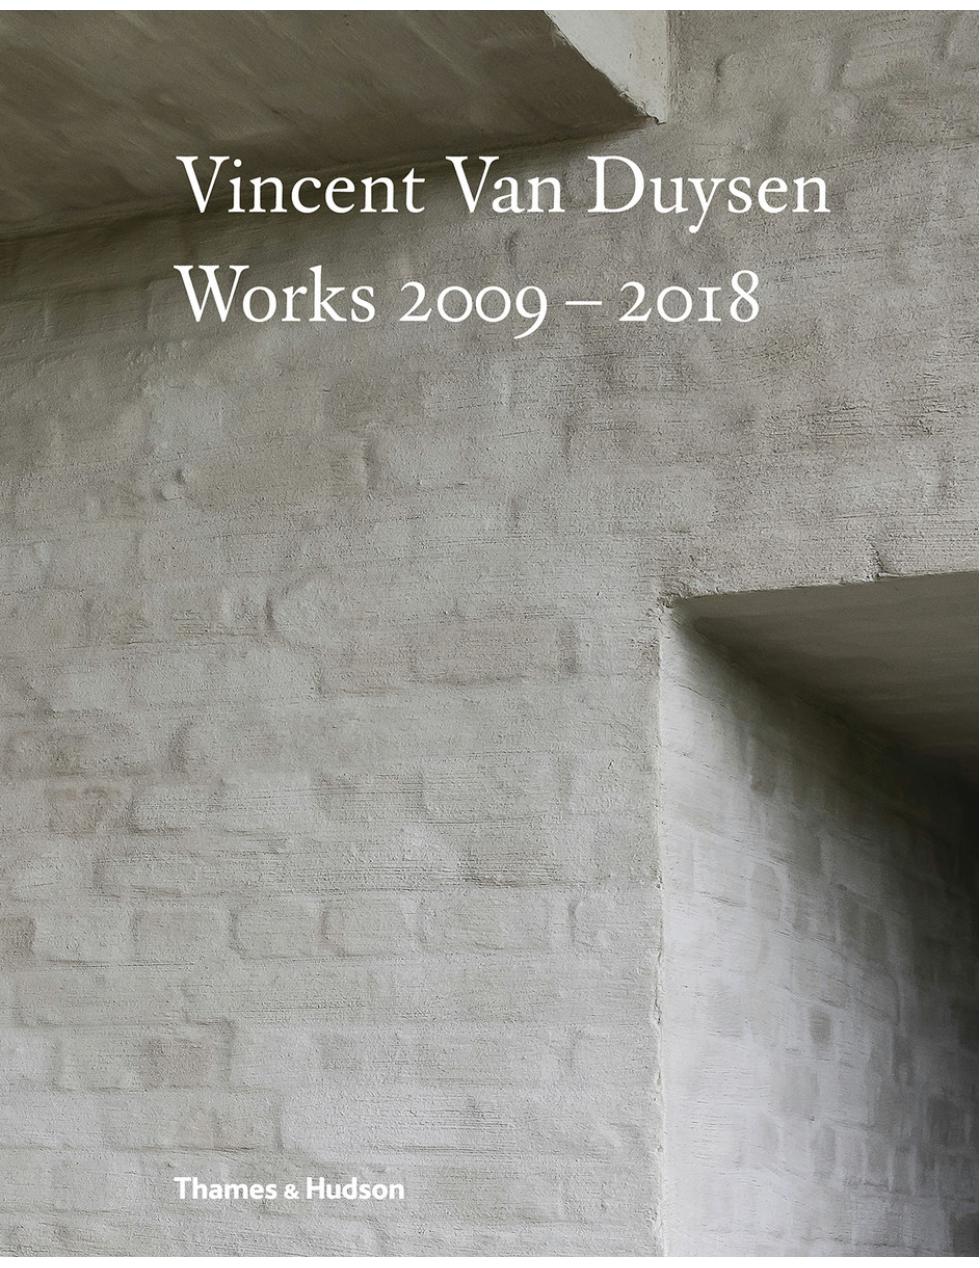 Book: VINCENT VAN DUYSEN - Works 2009 - 2018